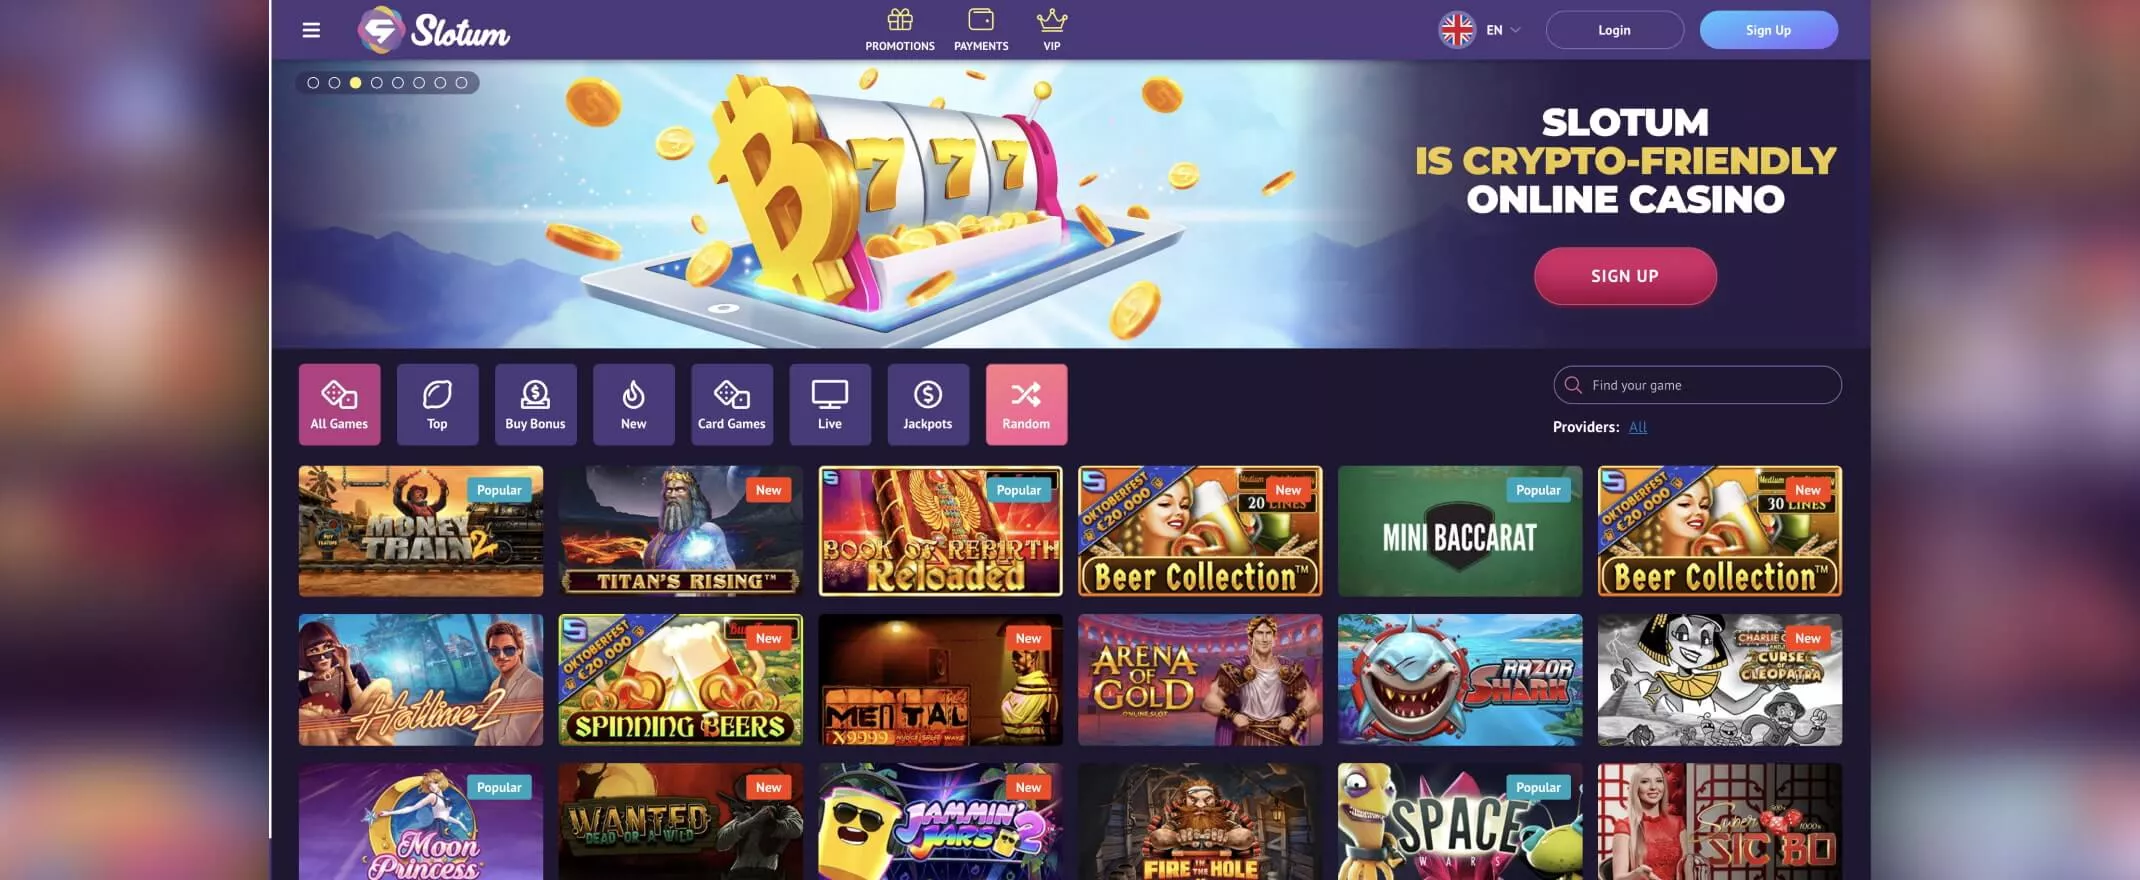 Slotum Casino homepage screenshot